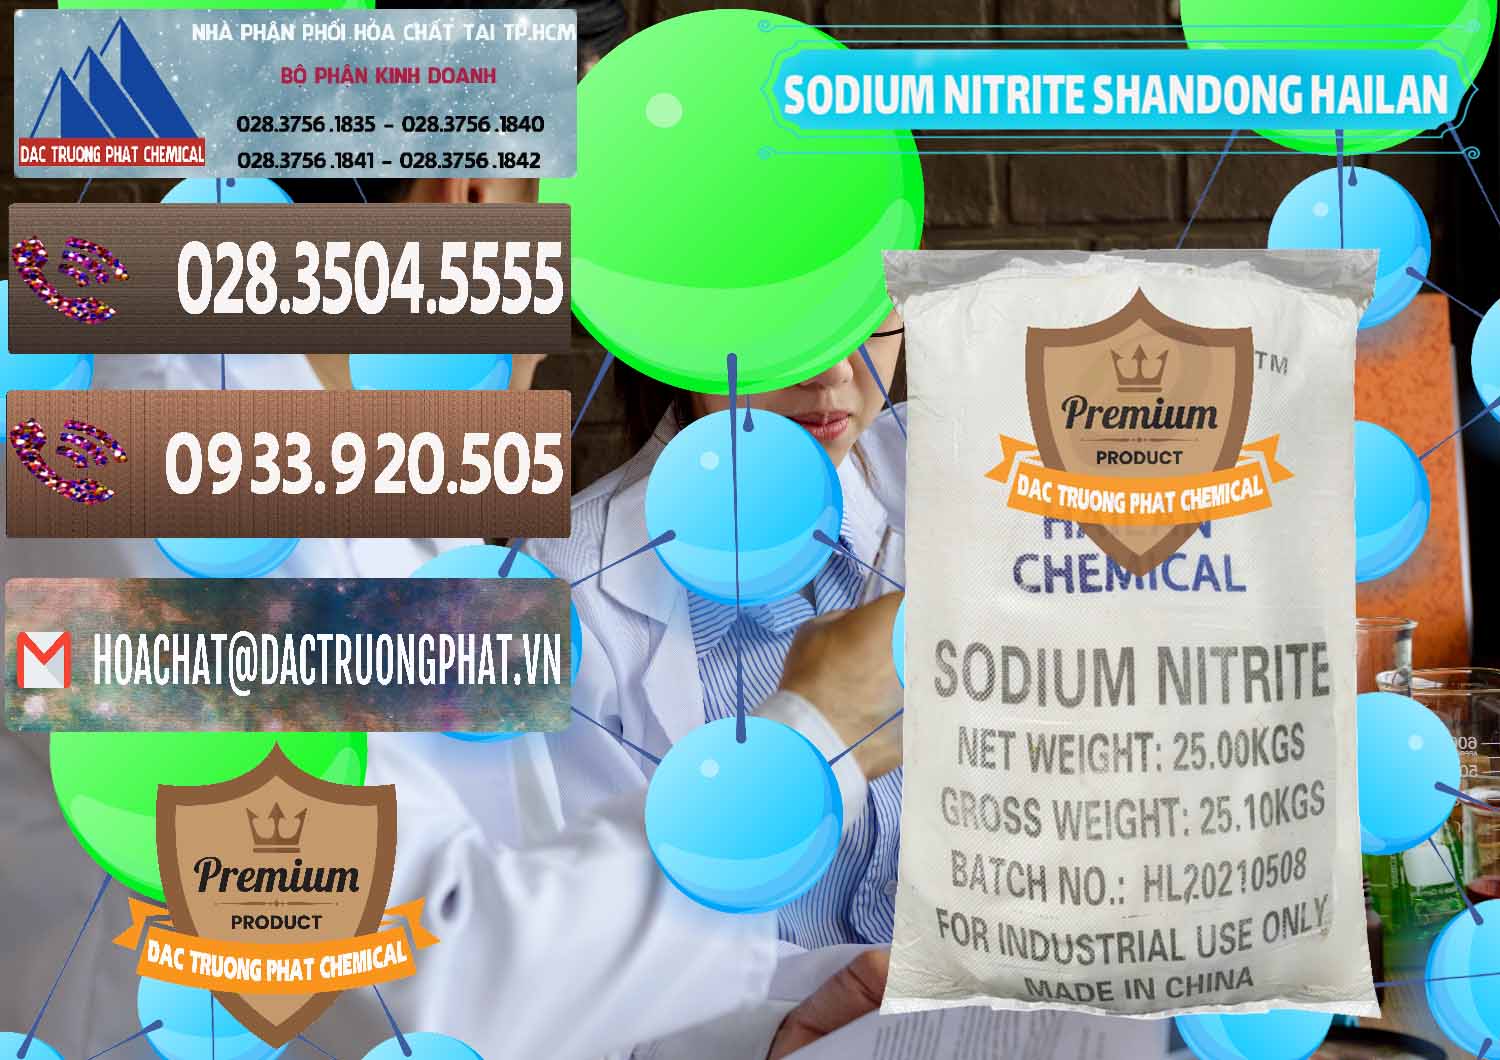 Chuyên cung ứng và bán Sodium Nitrite - NANO2 99.3% Shandong Hailan Trung Quốc China - 0284 - Đơn vị chuyên phân phối ( bán ) hóa chất tại TP.HCM - hoachatviet.net